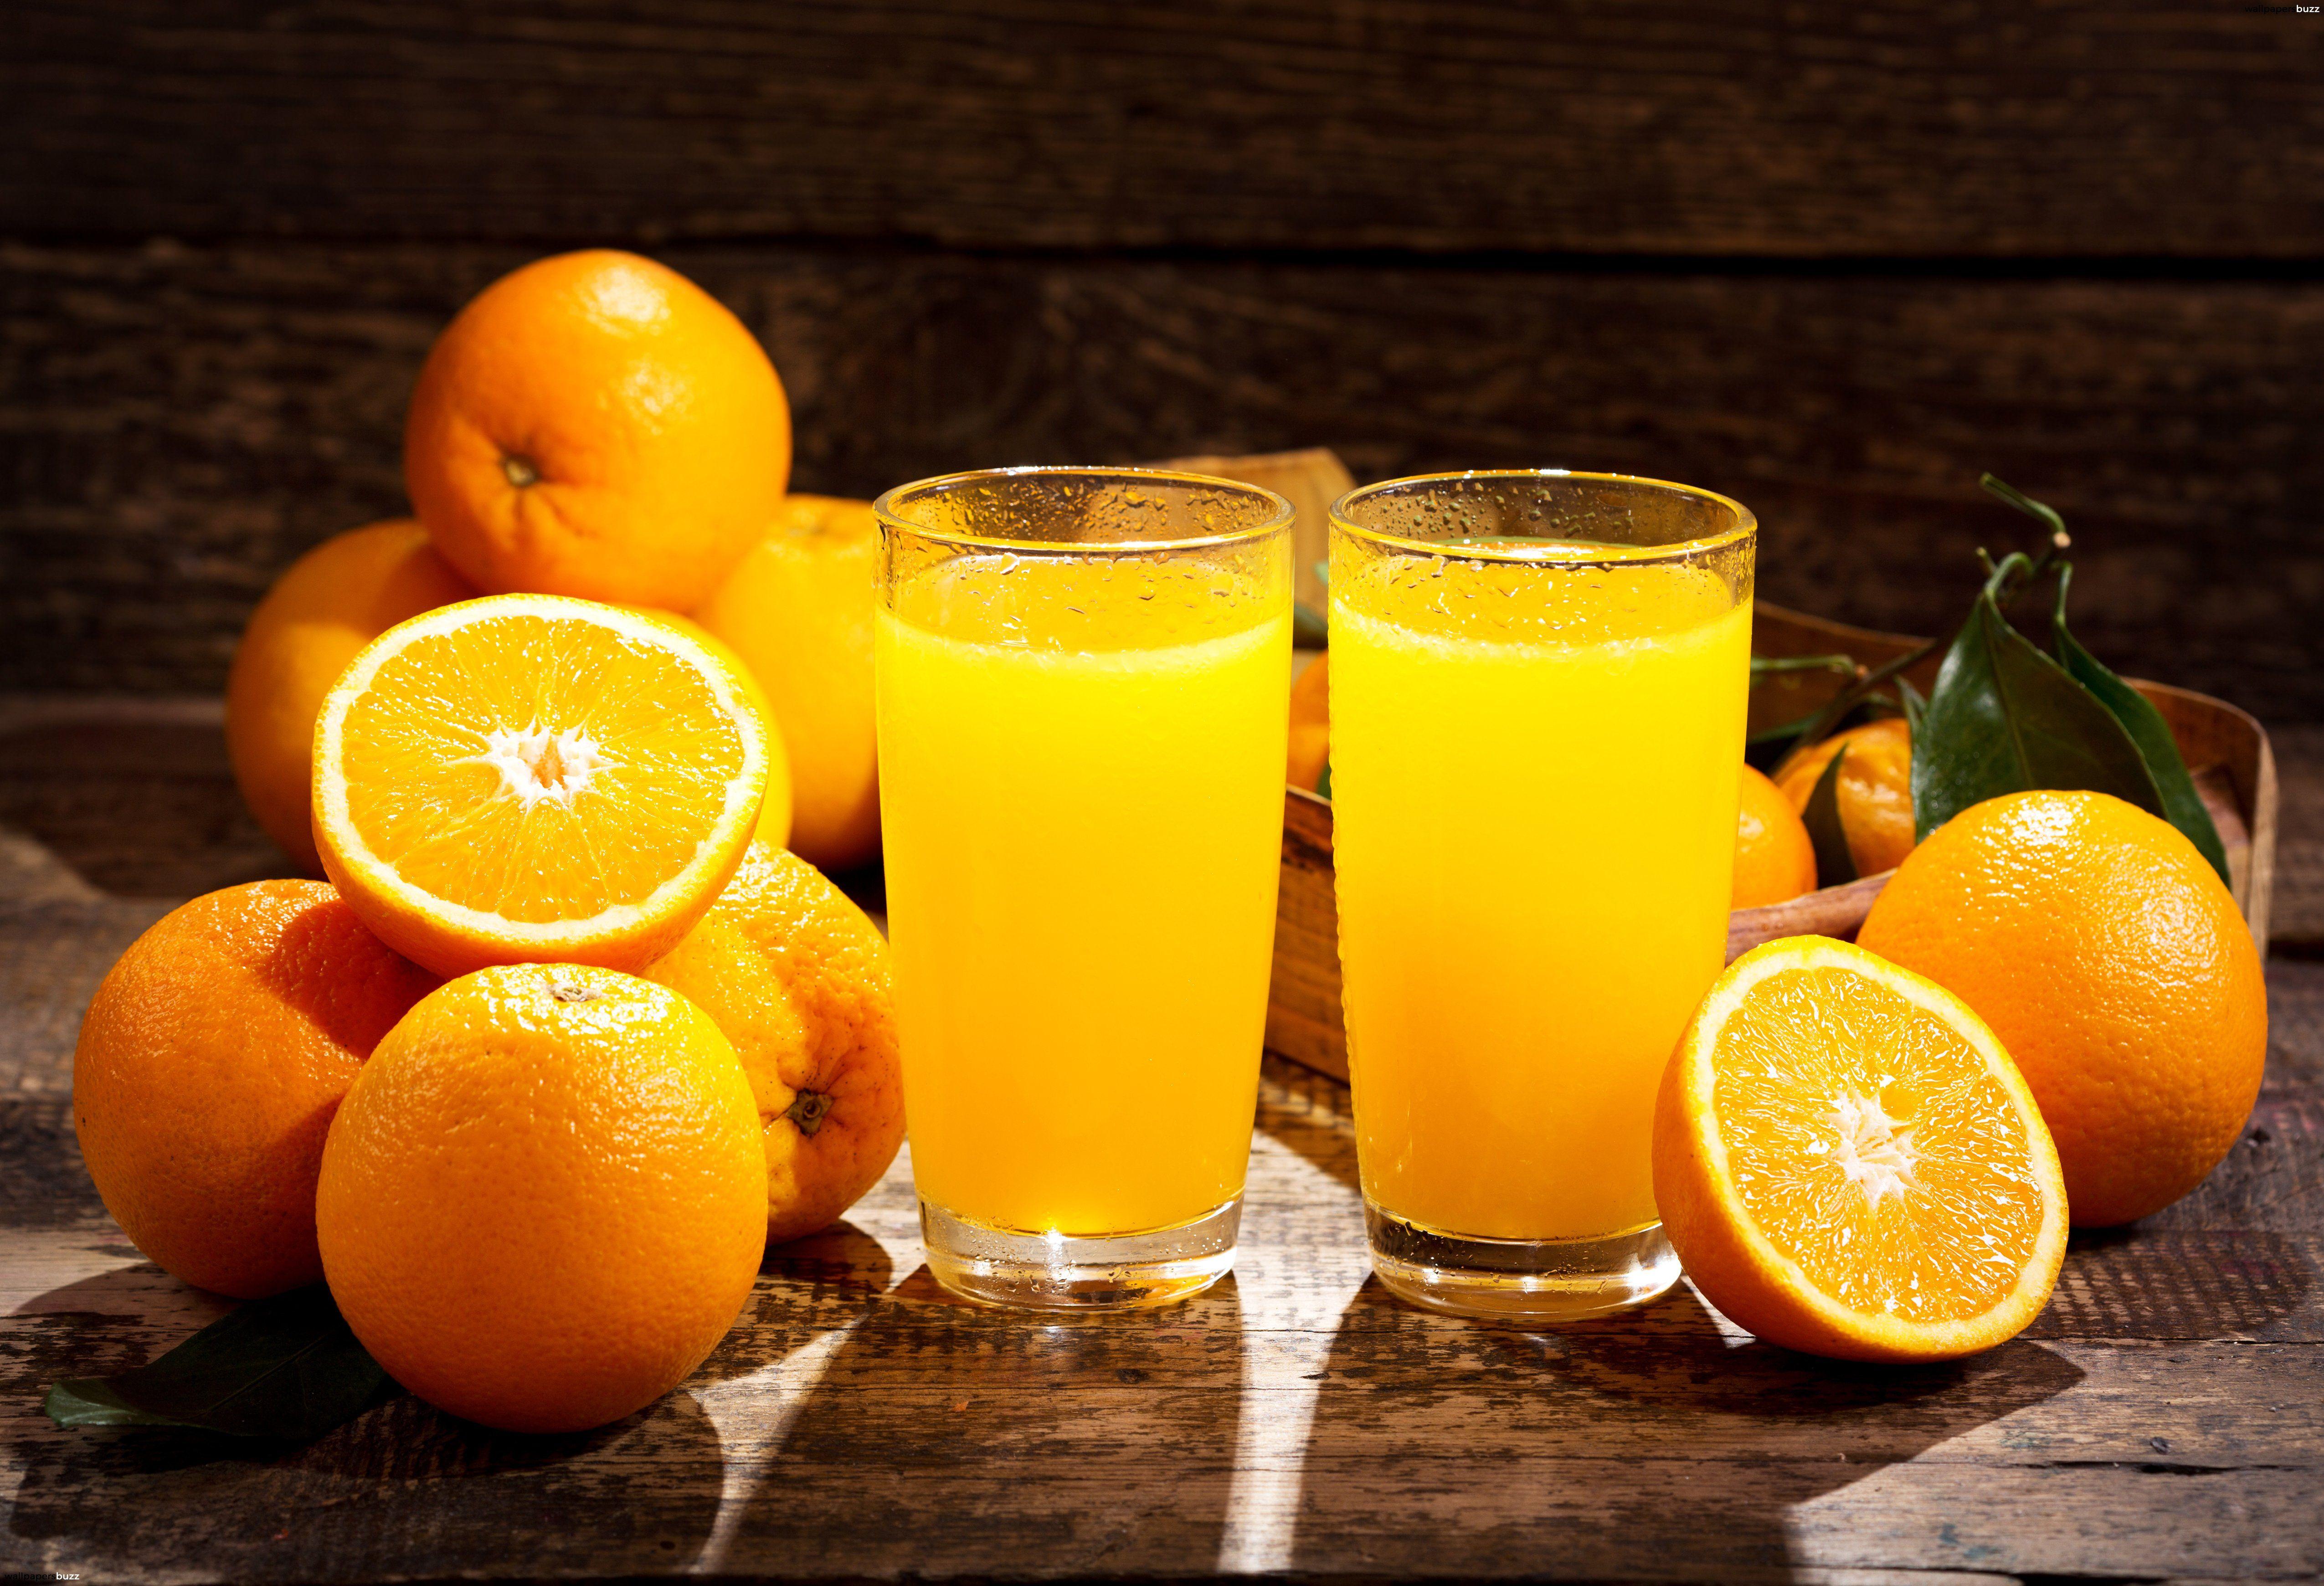 Orange Juice Wallpapers - Top Free Orange Juice Backgrounds ...